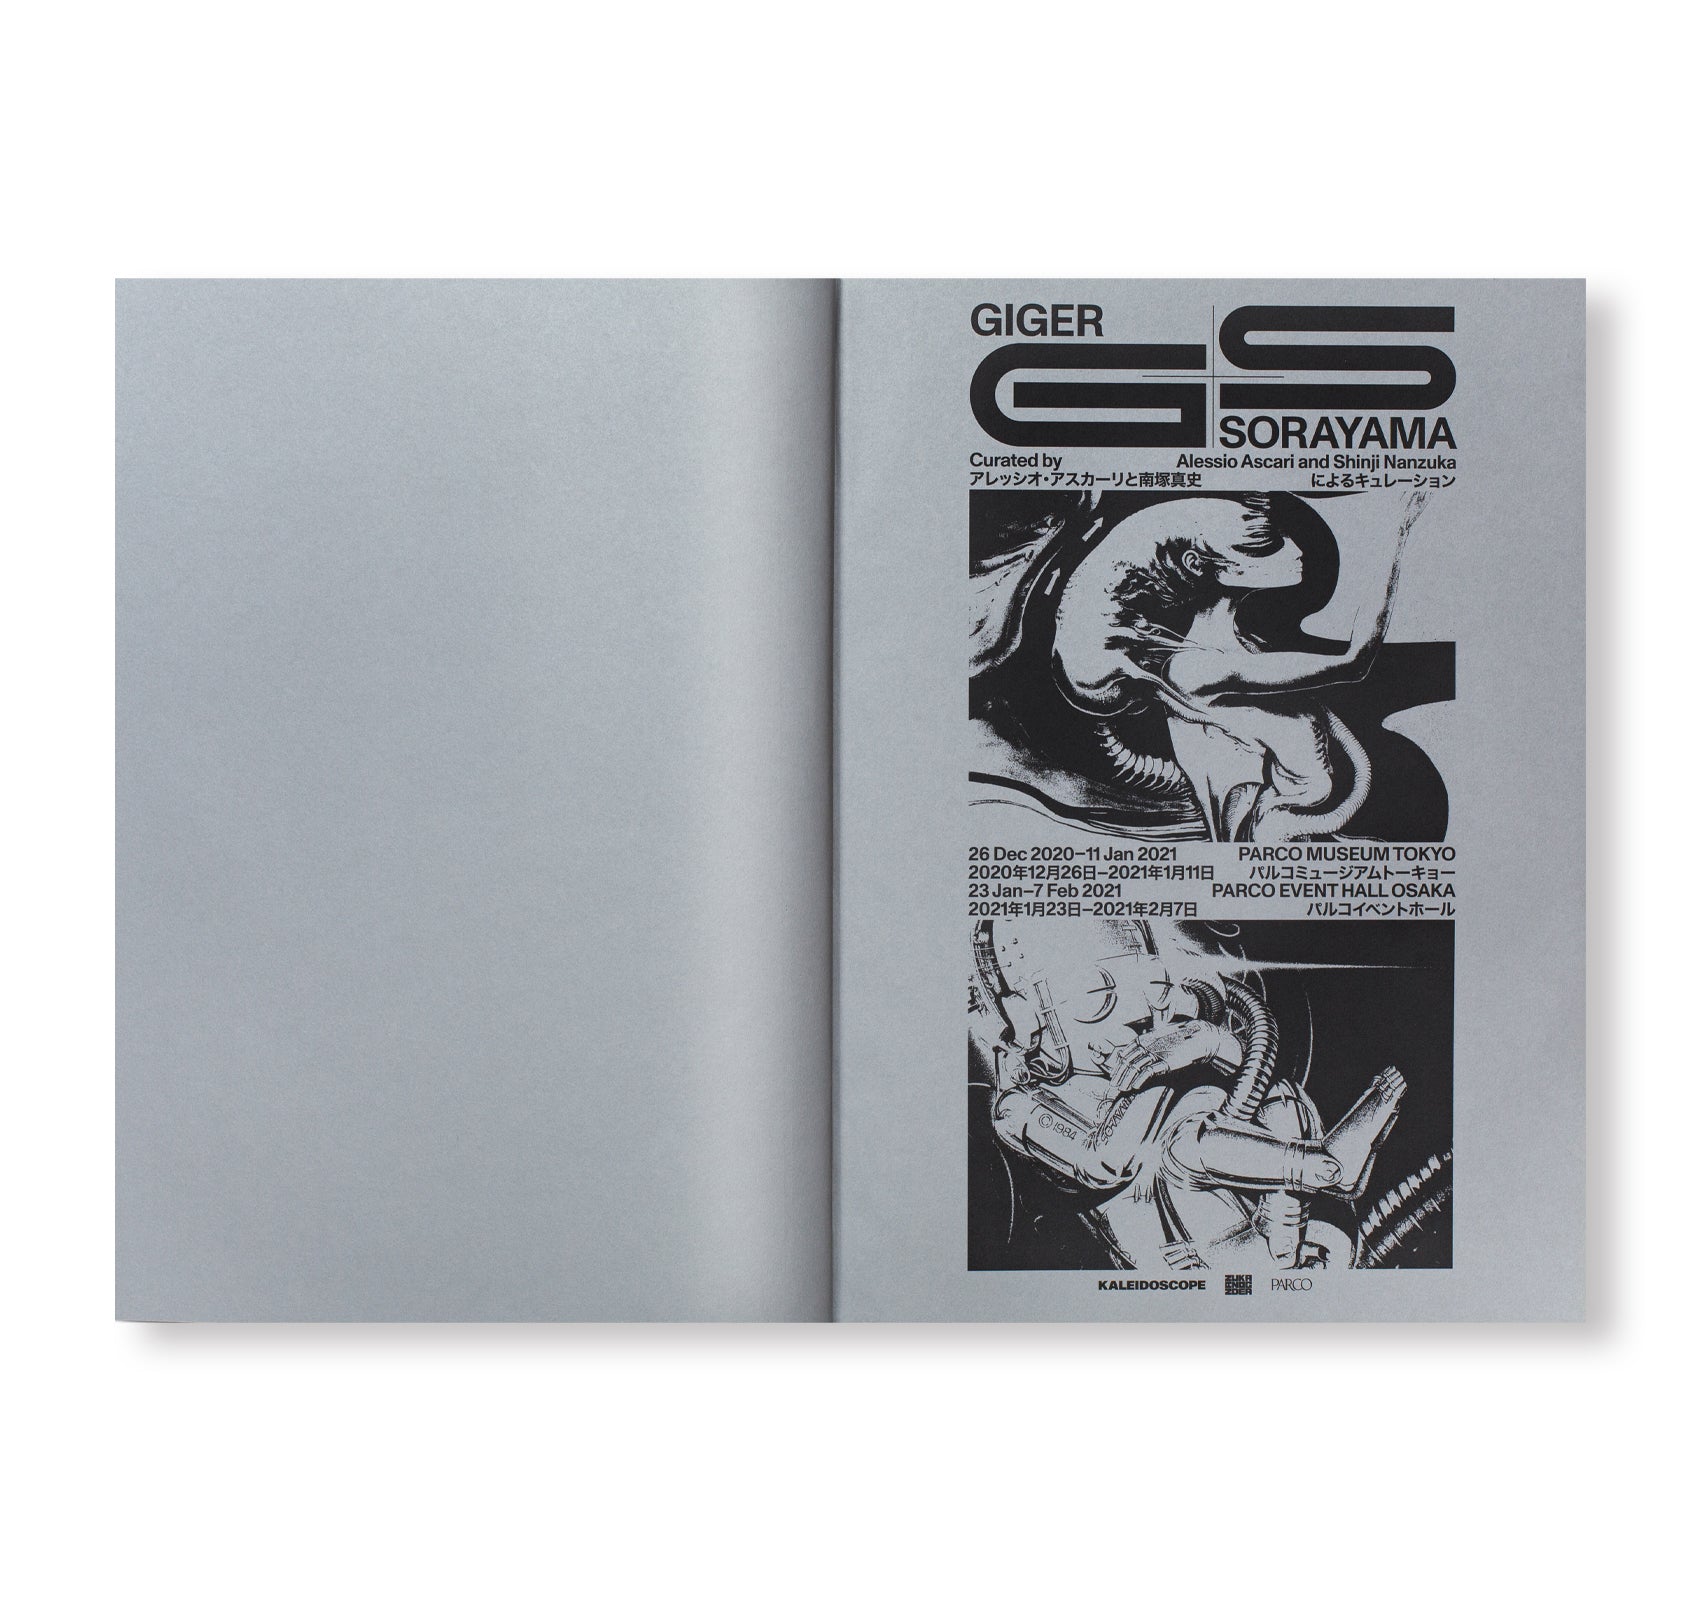 GIGER SORAYAMA by H. R. Giger, Hajime Sorayama [SIGNED]